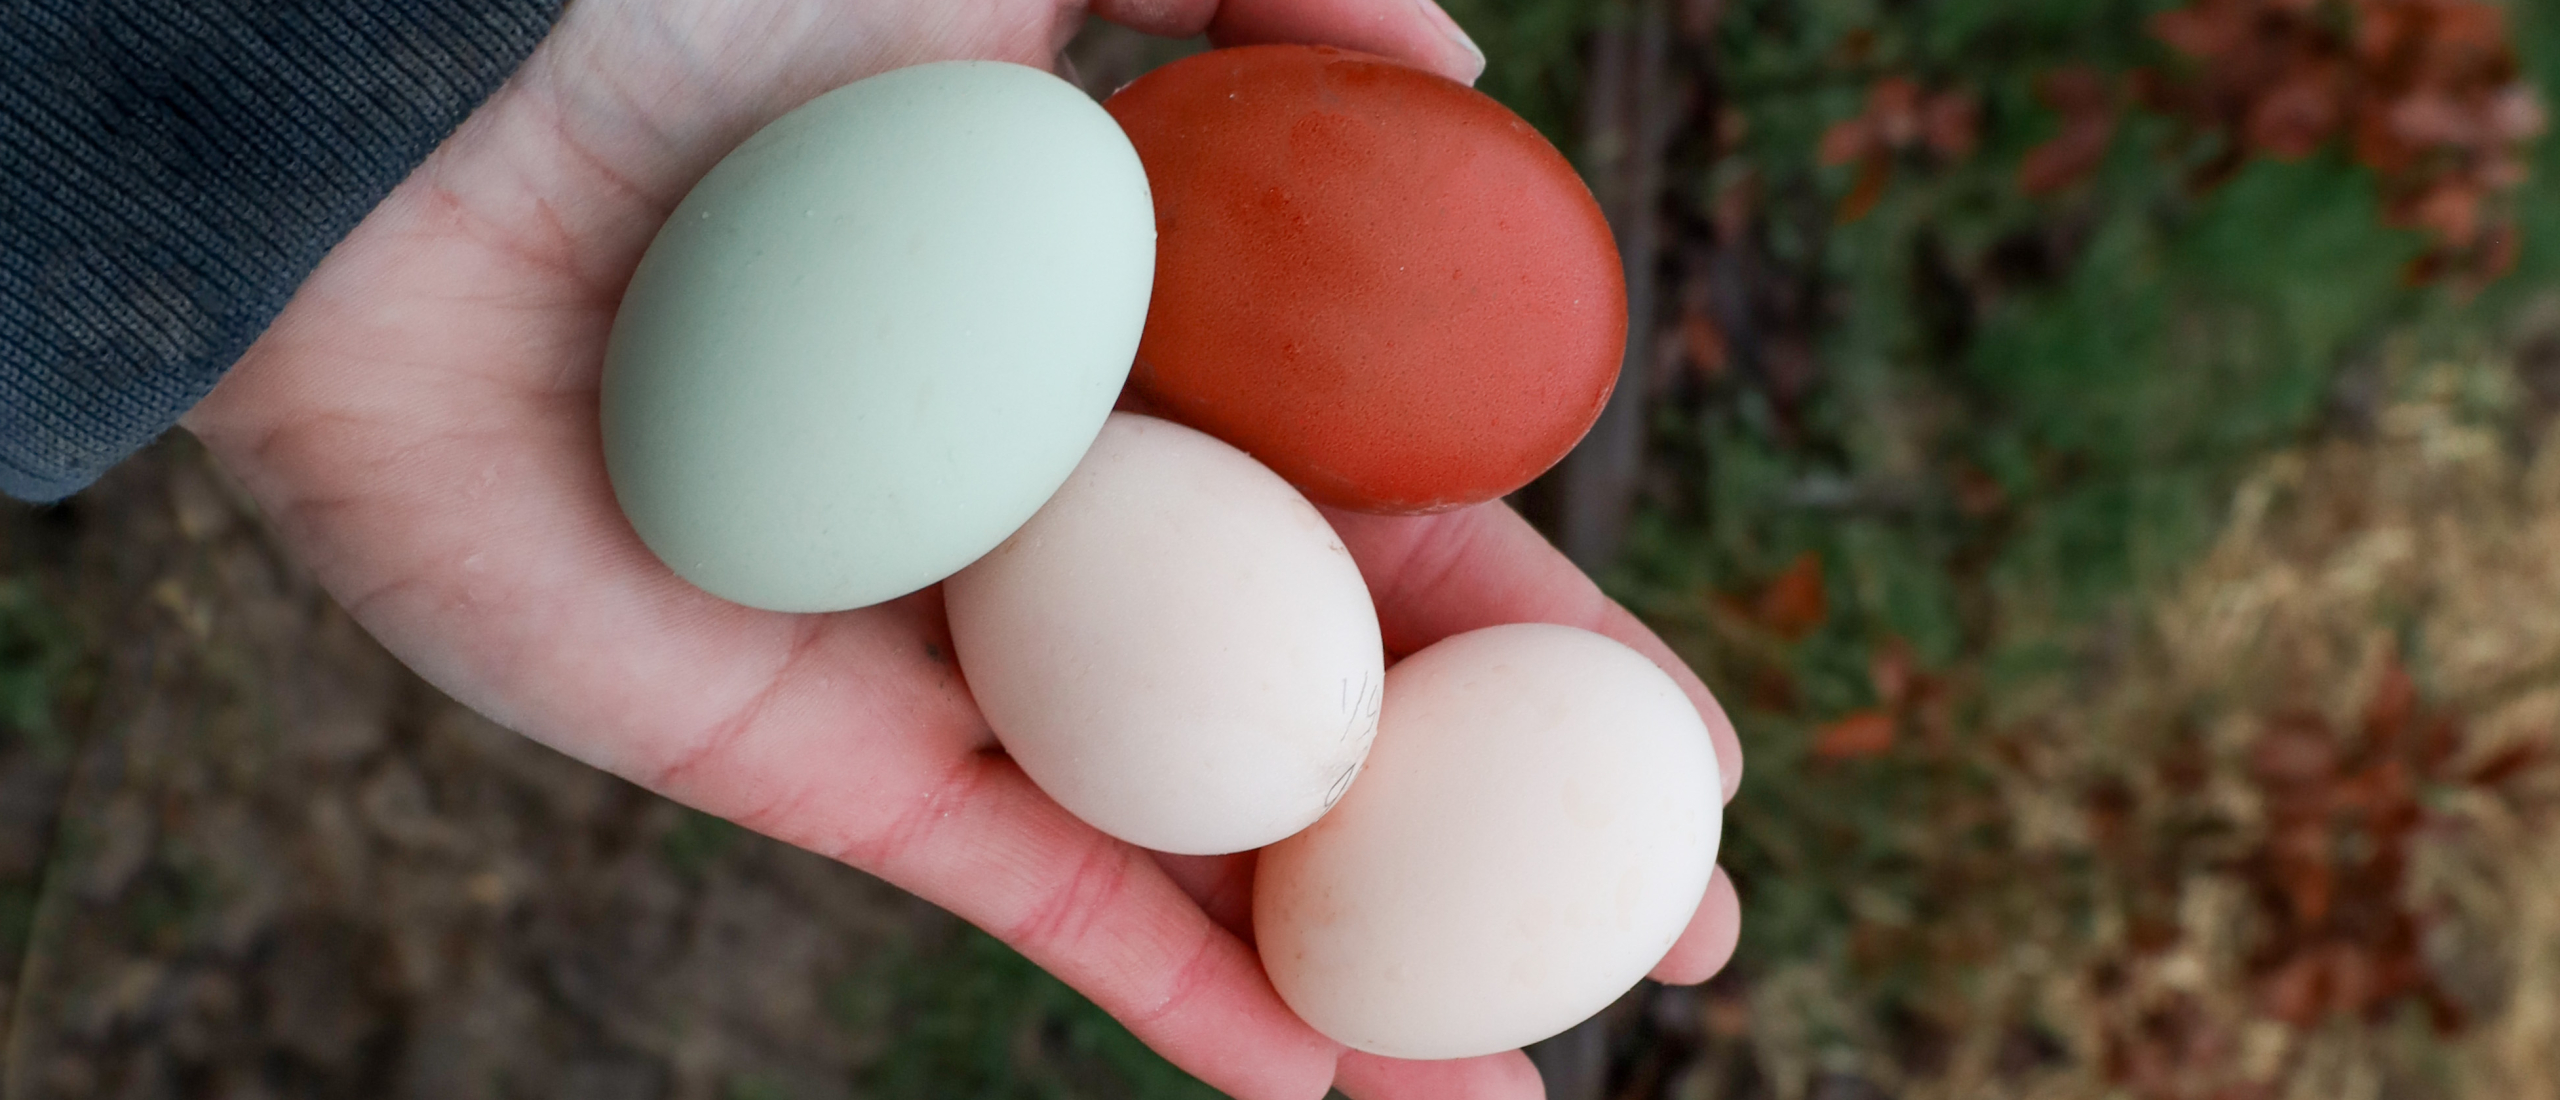 Voorbereiden eieren uit te broeden | Van tot volwassen kip | Blogs | Another Chick